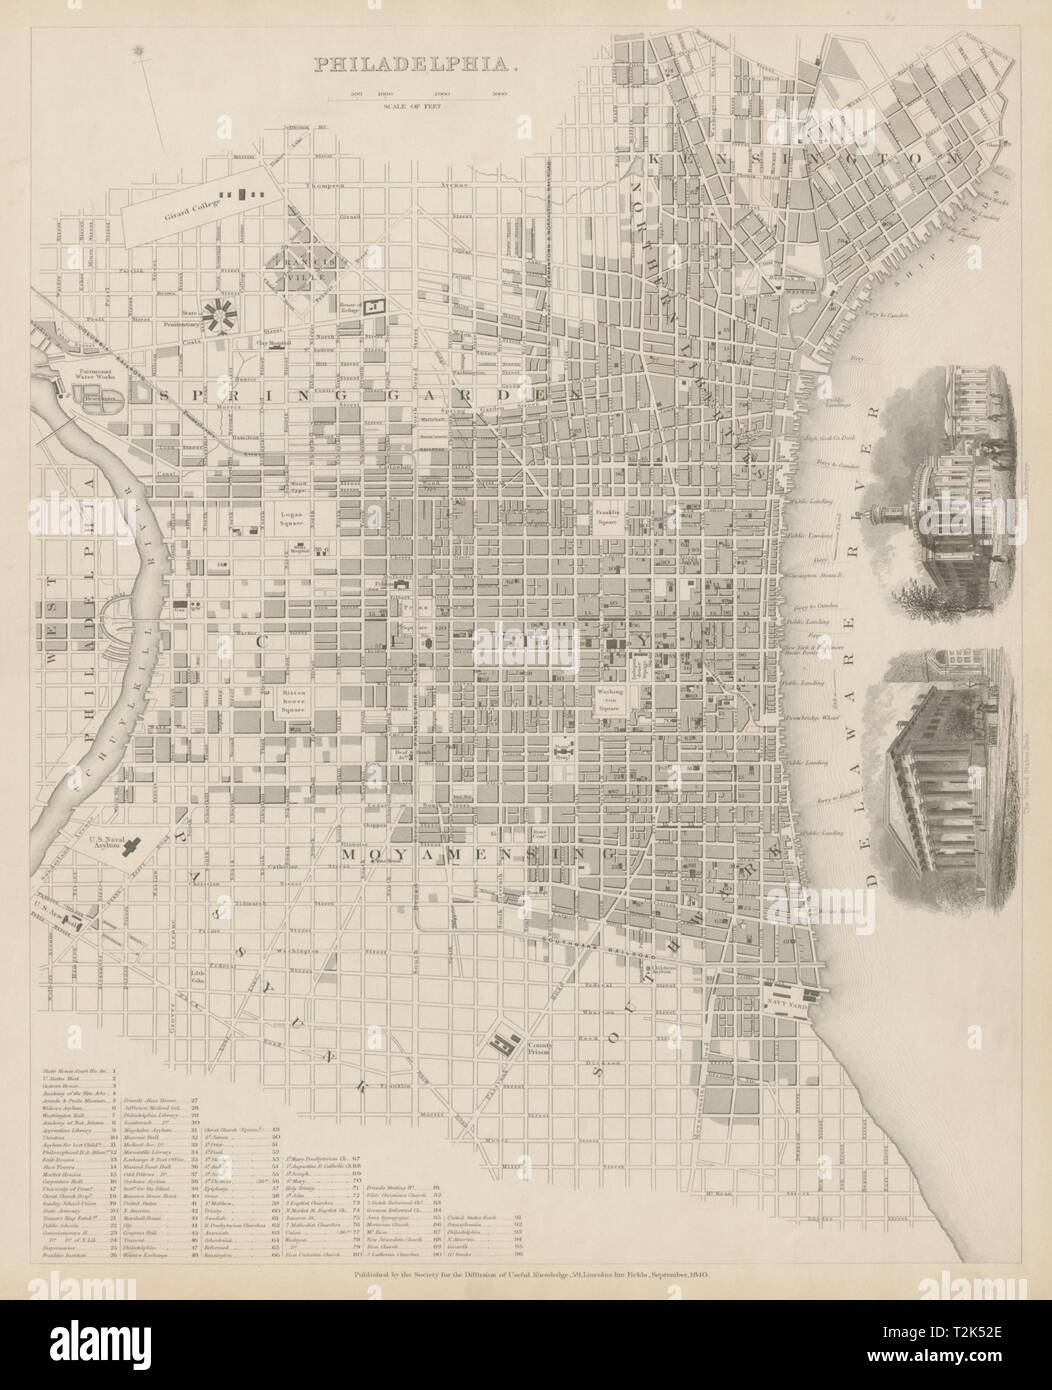 Ville antique de Philadelphie Plan de ville plan. Nous en médaillon, Banque d'échange. 1844 SDUK Banque D'Images